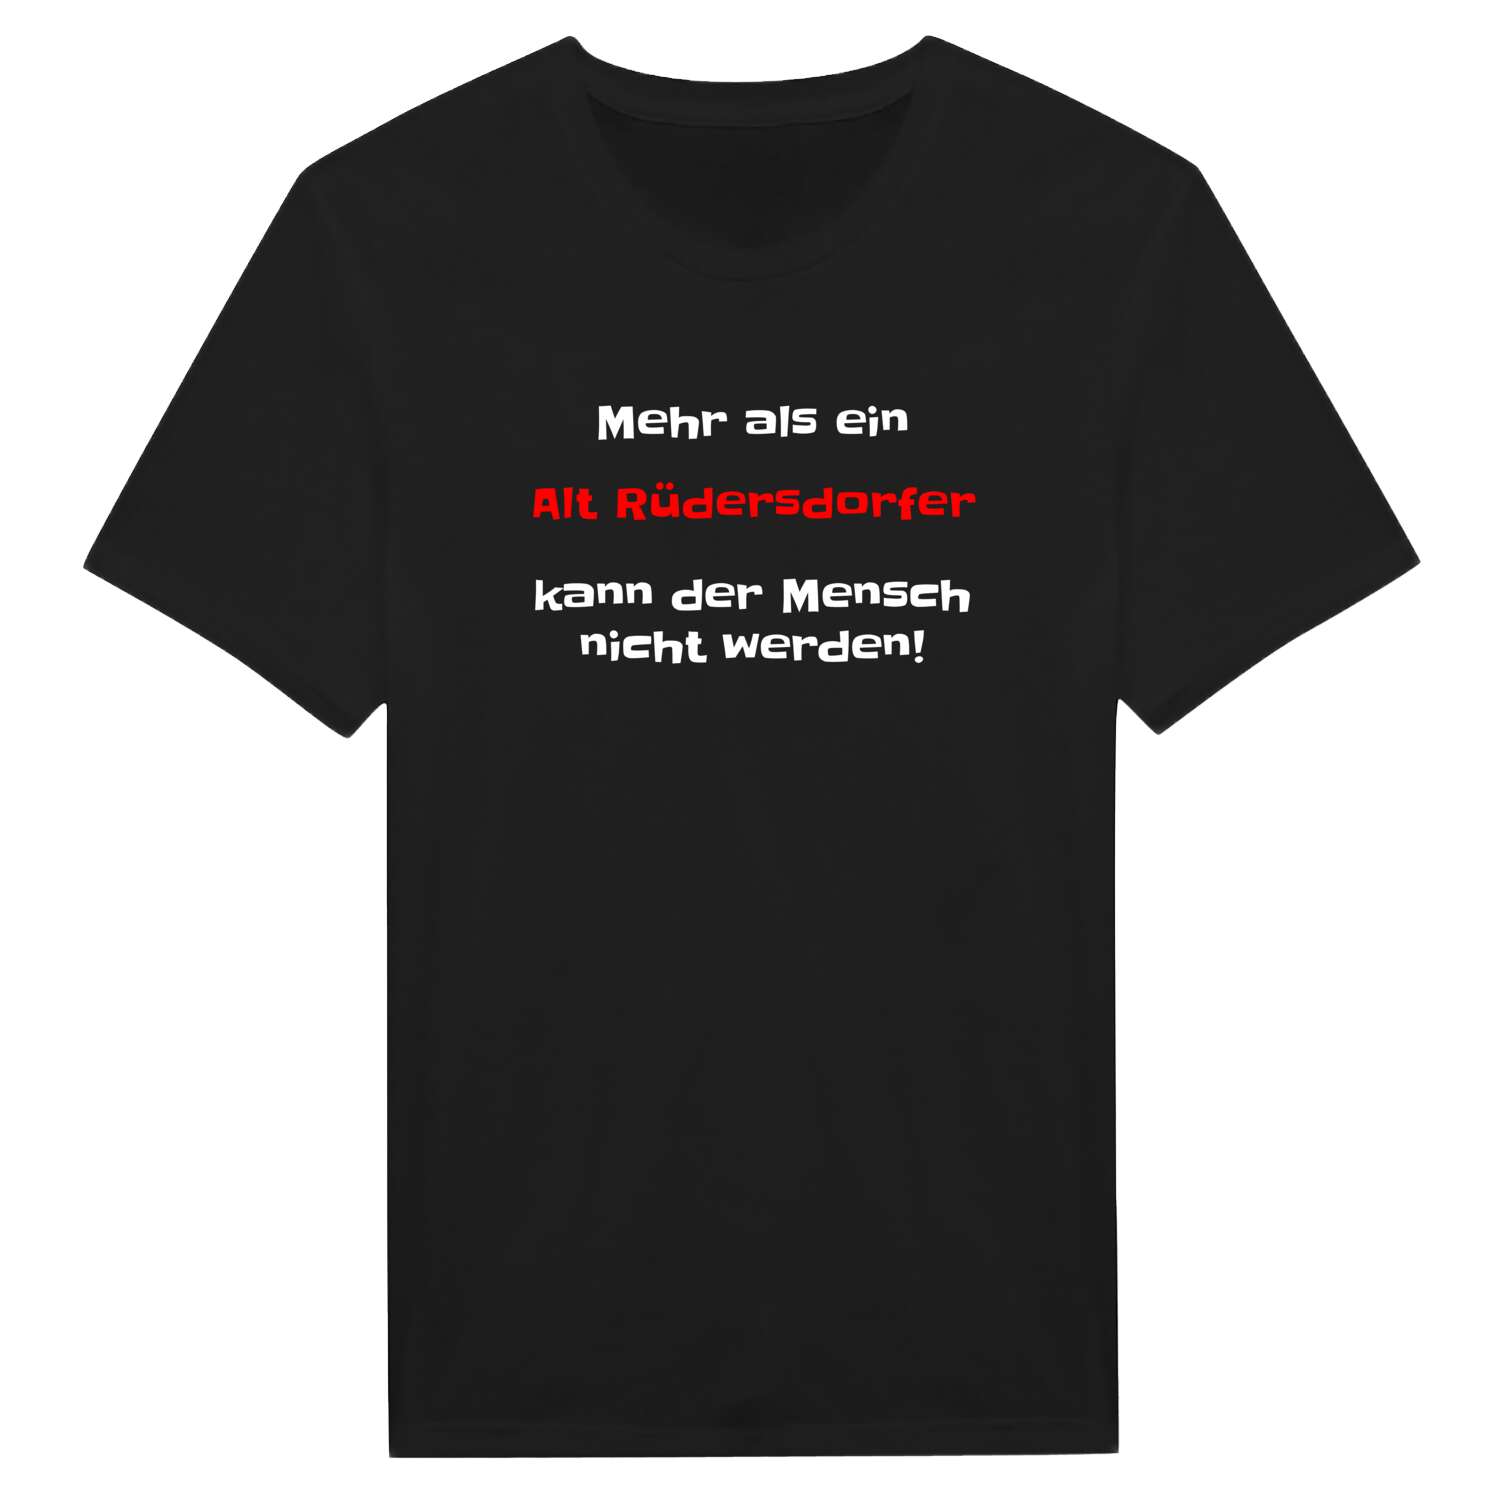 Alt Rüdersdorf T-Shirt »Mehr als ein«